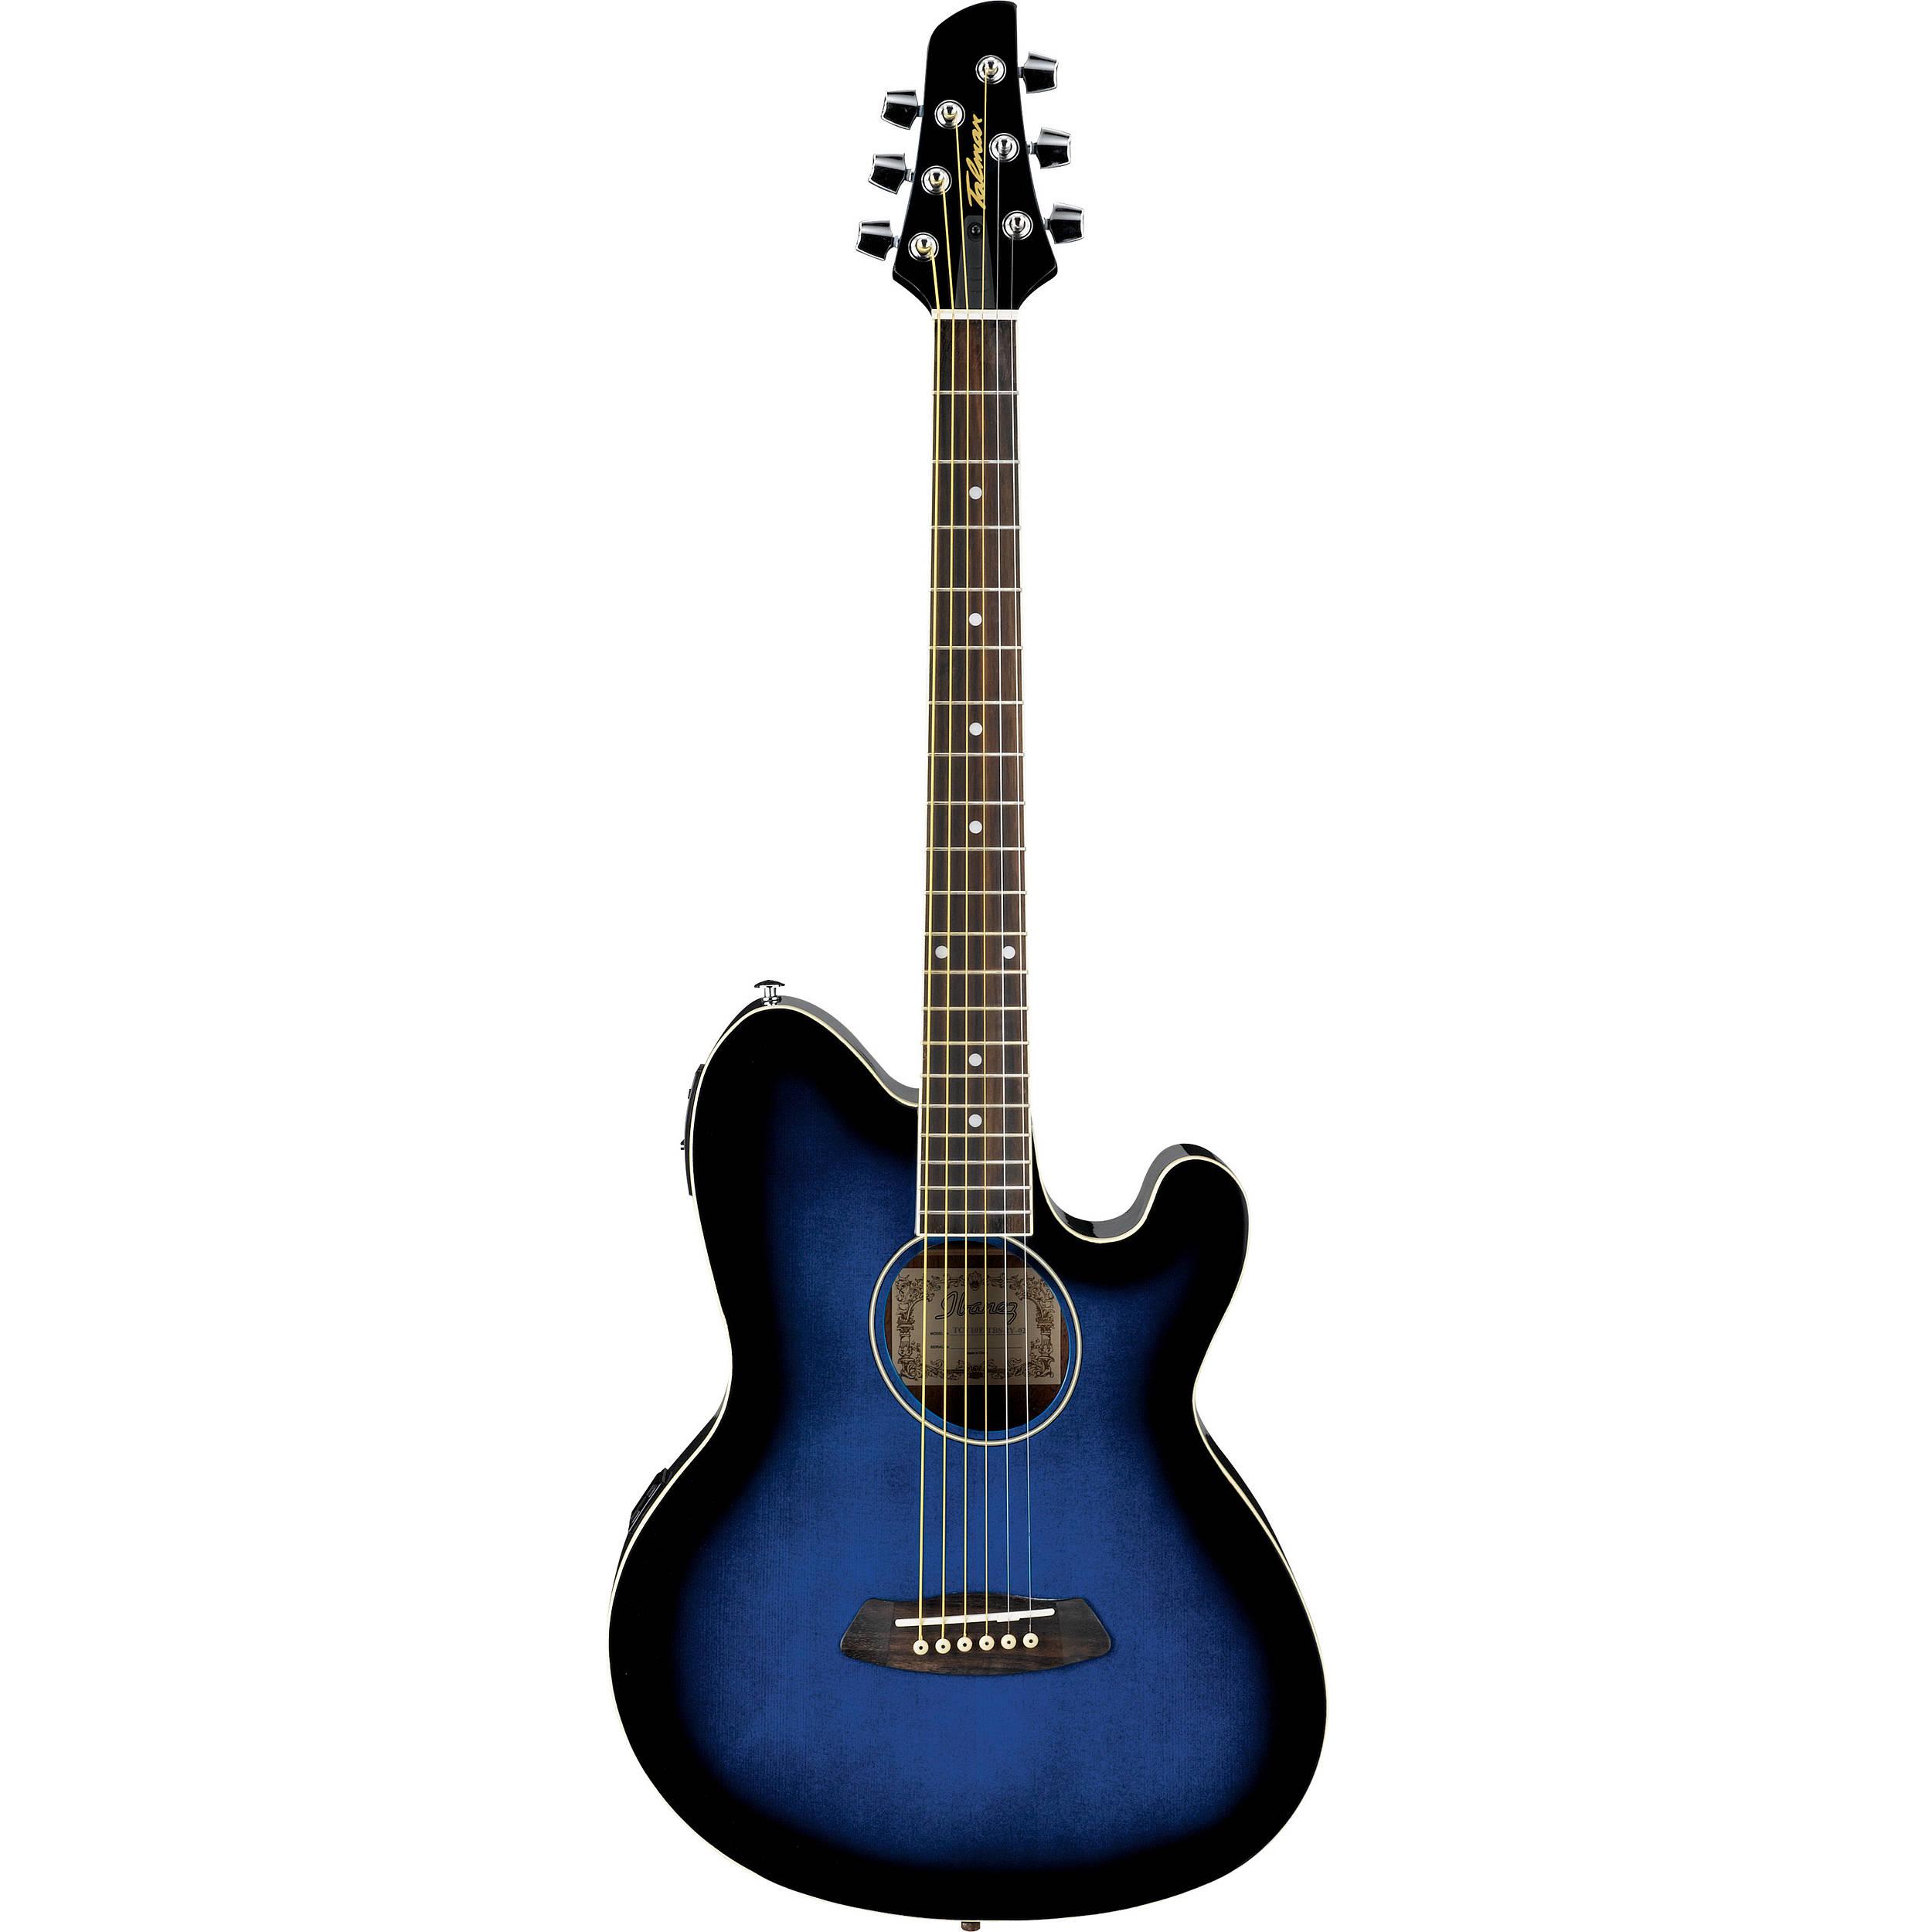 Ibañez - Guitarra Electroacústica Talman, Color: Azúl Somb. Mod.TCY10E-TBS_21